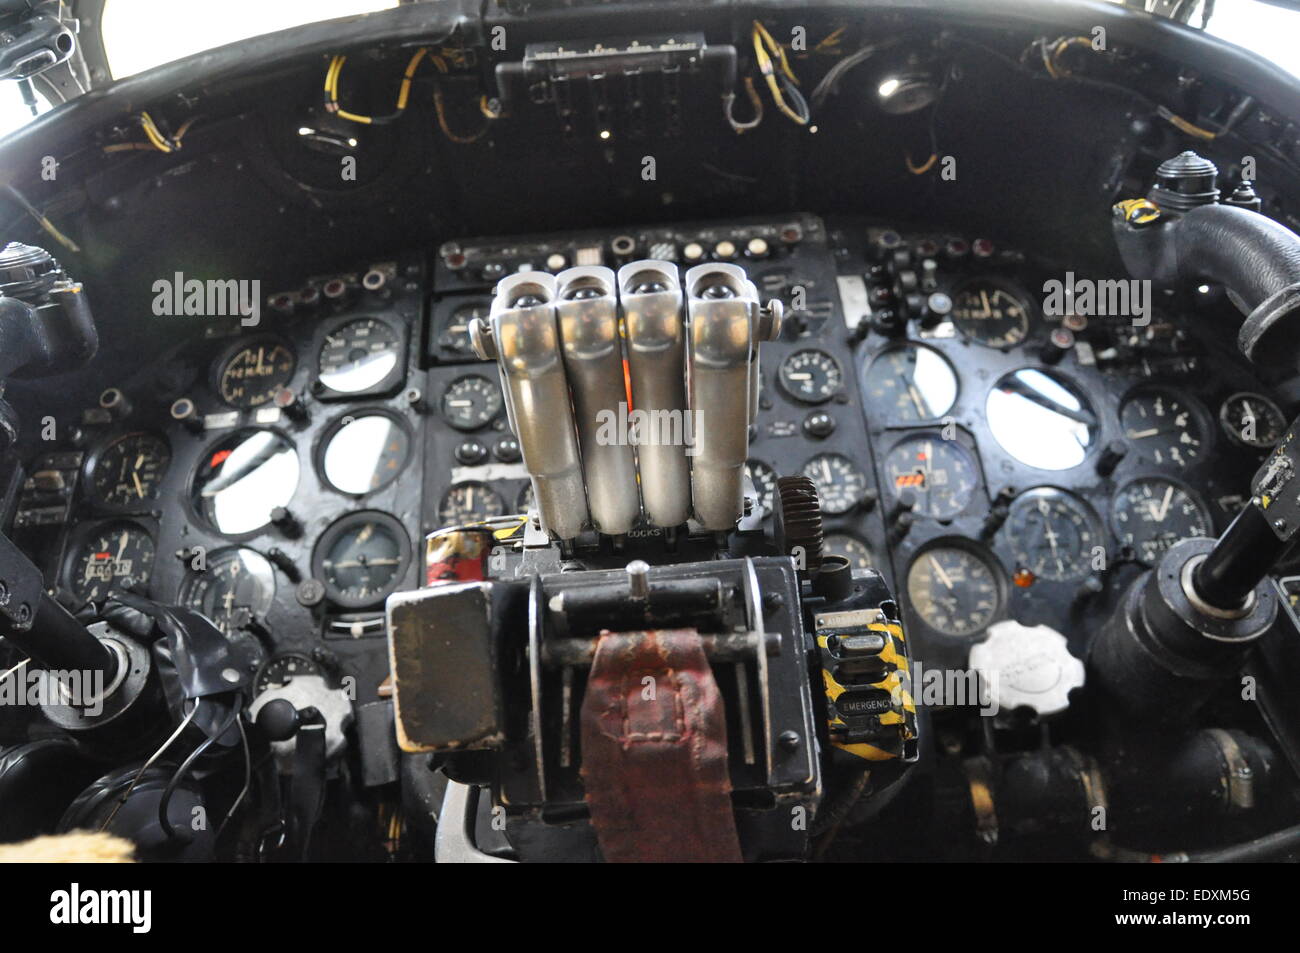 Détails du cockpit de l'avion bombardier Avro Vulcan, illustrant la technologie de l'ère de la guerre froide. Cockpit d'avion Vulcan avec leviers d'accélérateur et jauges Banque D'Images